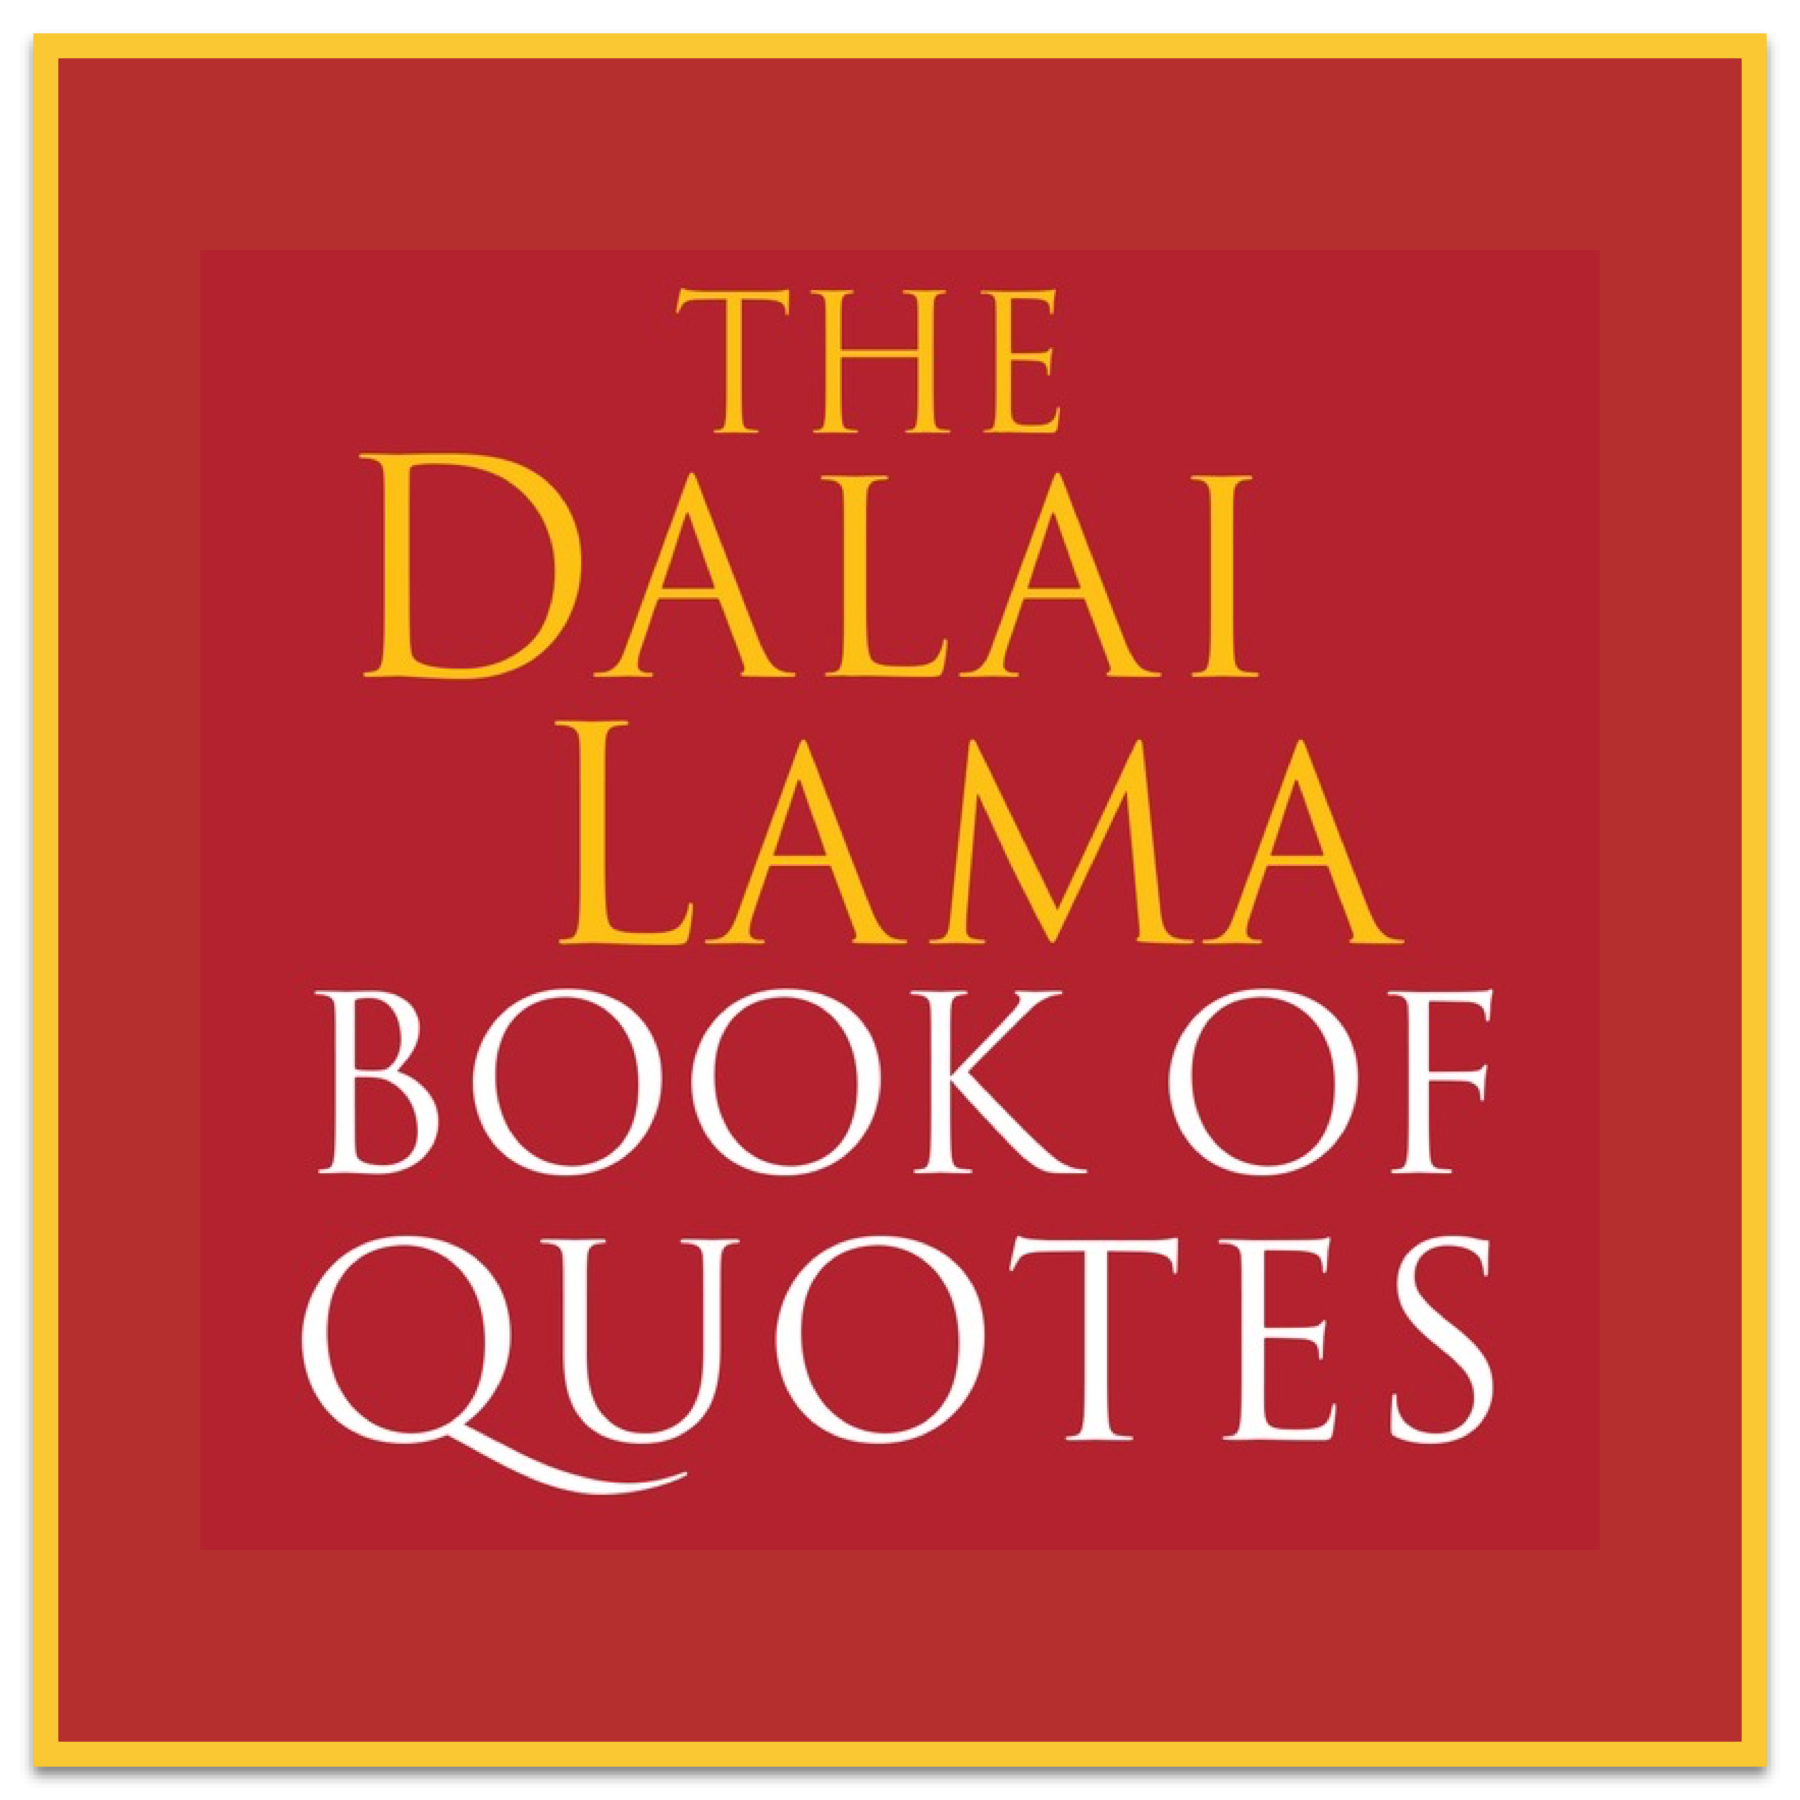 Dalai Lama Books